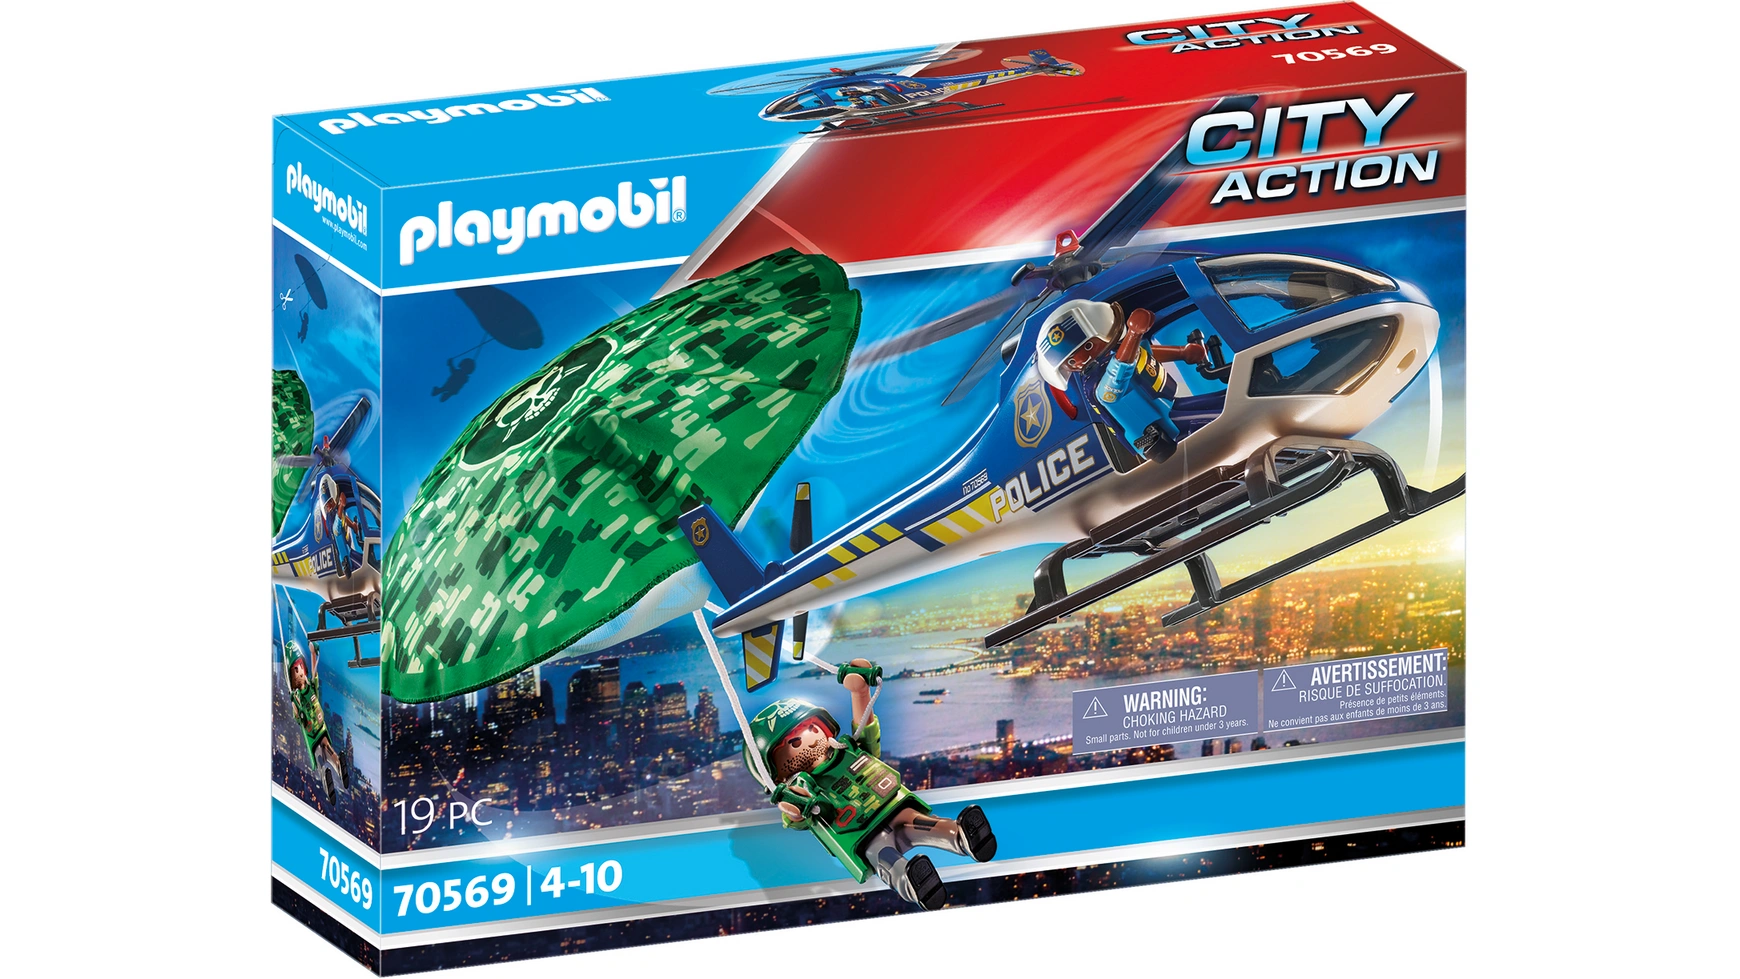 City action полицейский вертолет: погоня с парашютом Playmobil city action полицейский вертолет погоня с парашютом playmobil